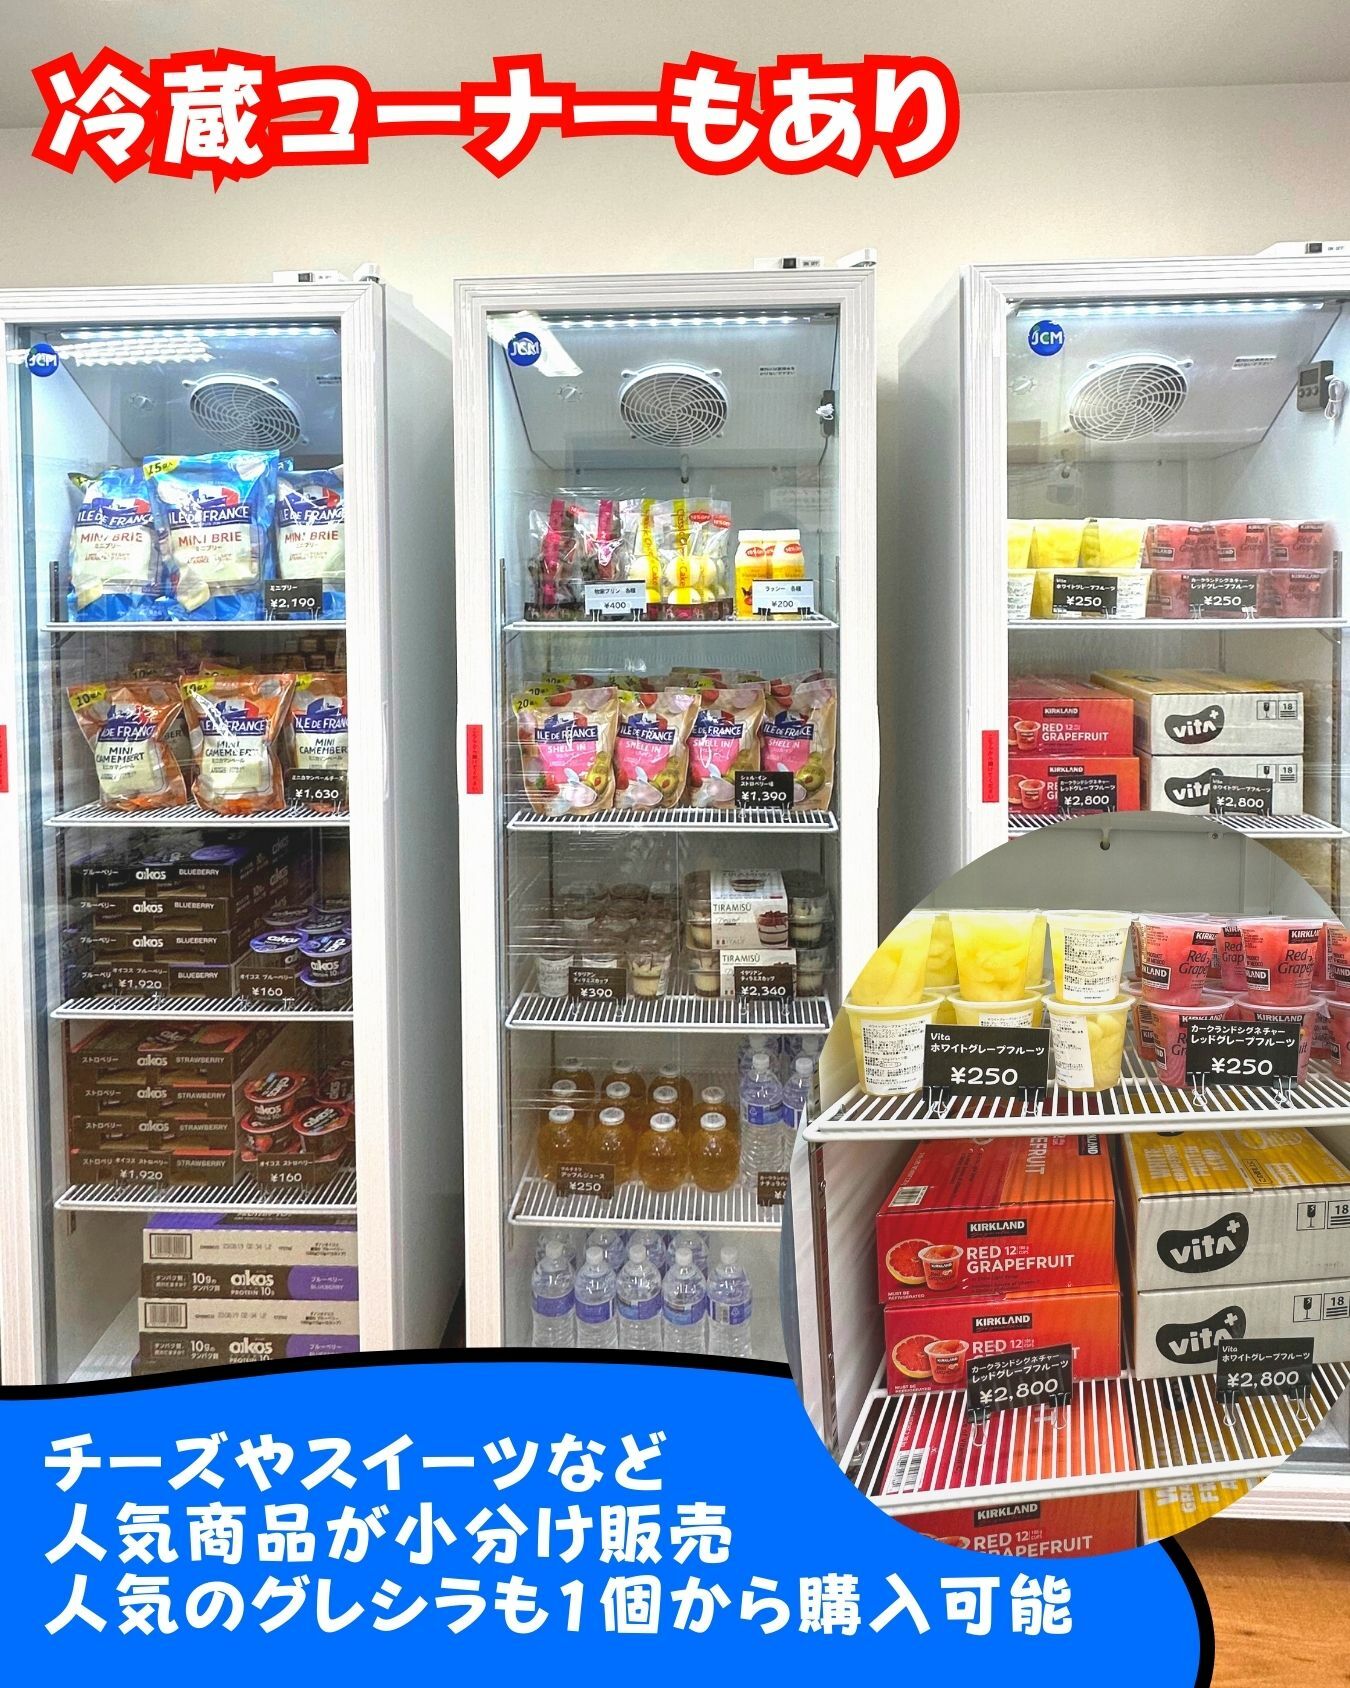 【コストコ】コストコ再販店にも冷蔵コーナーあり